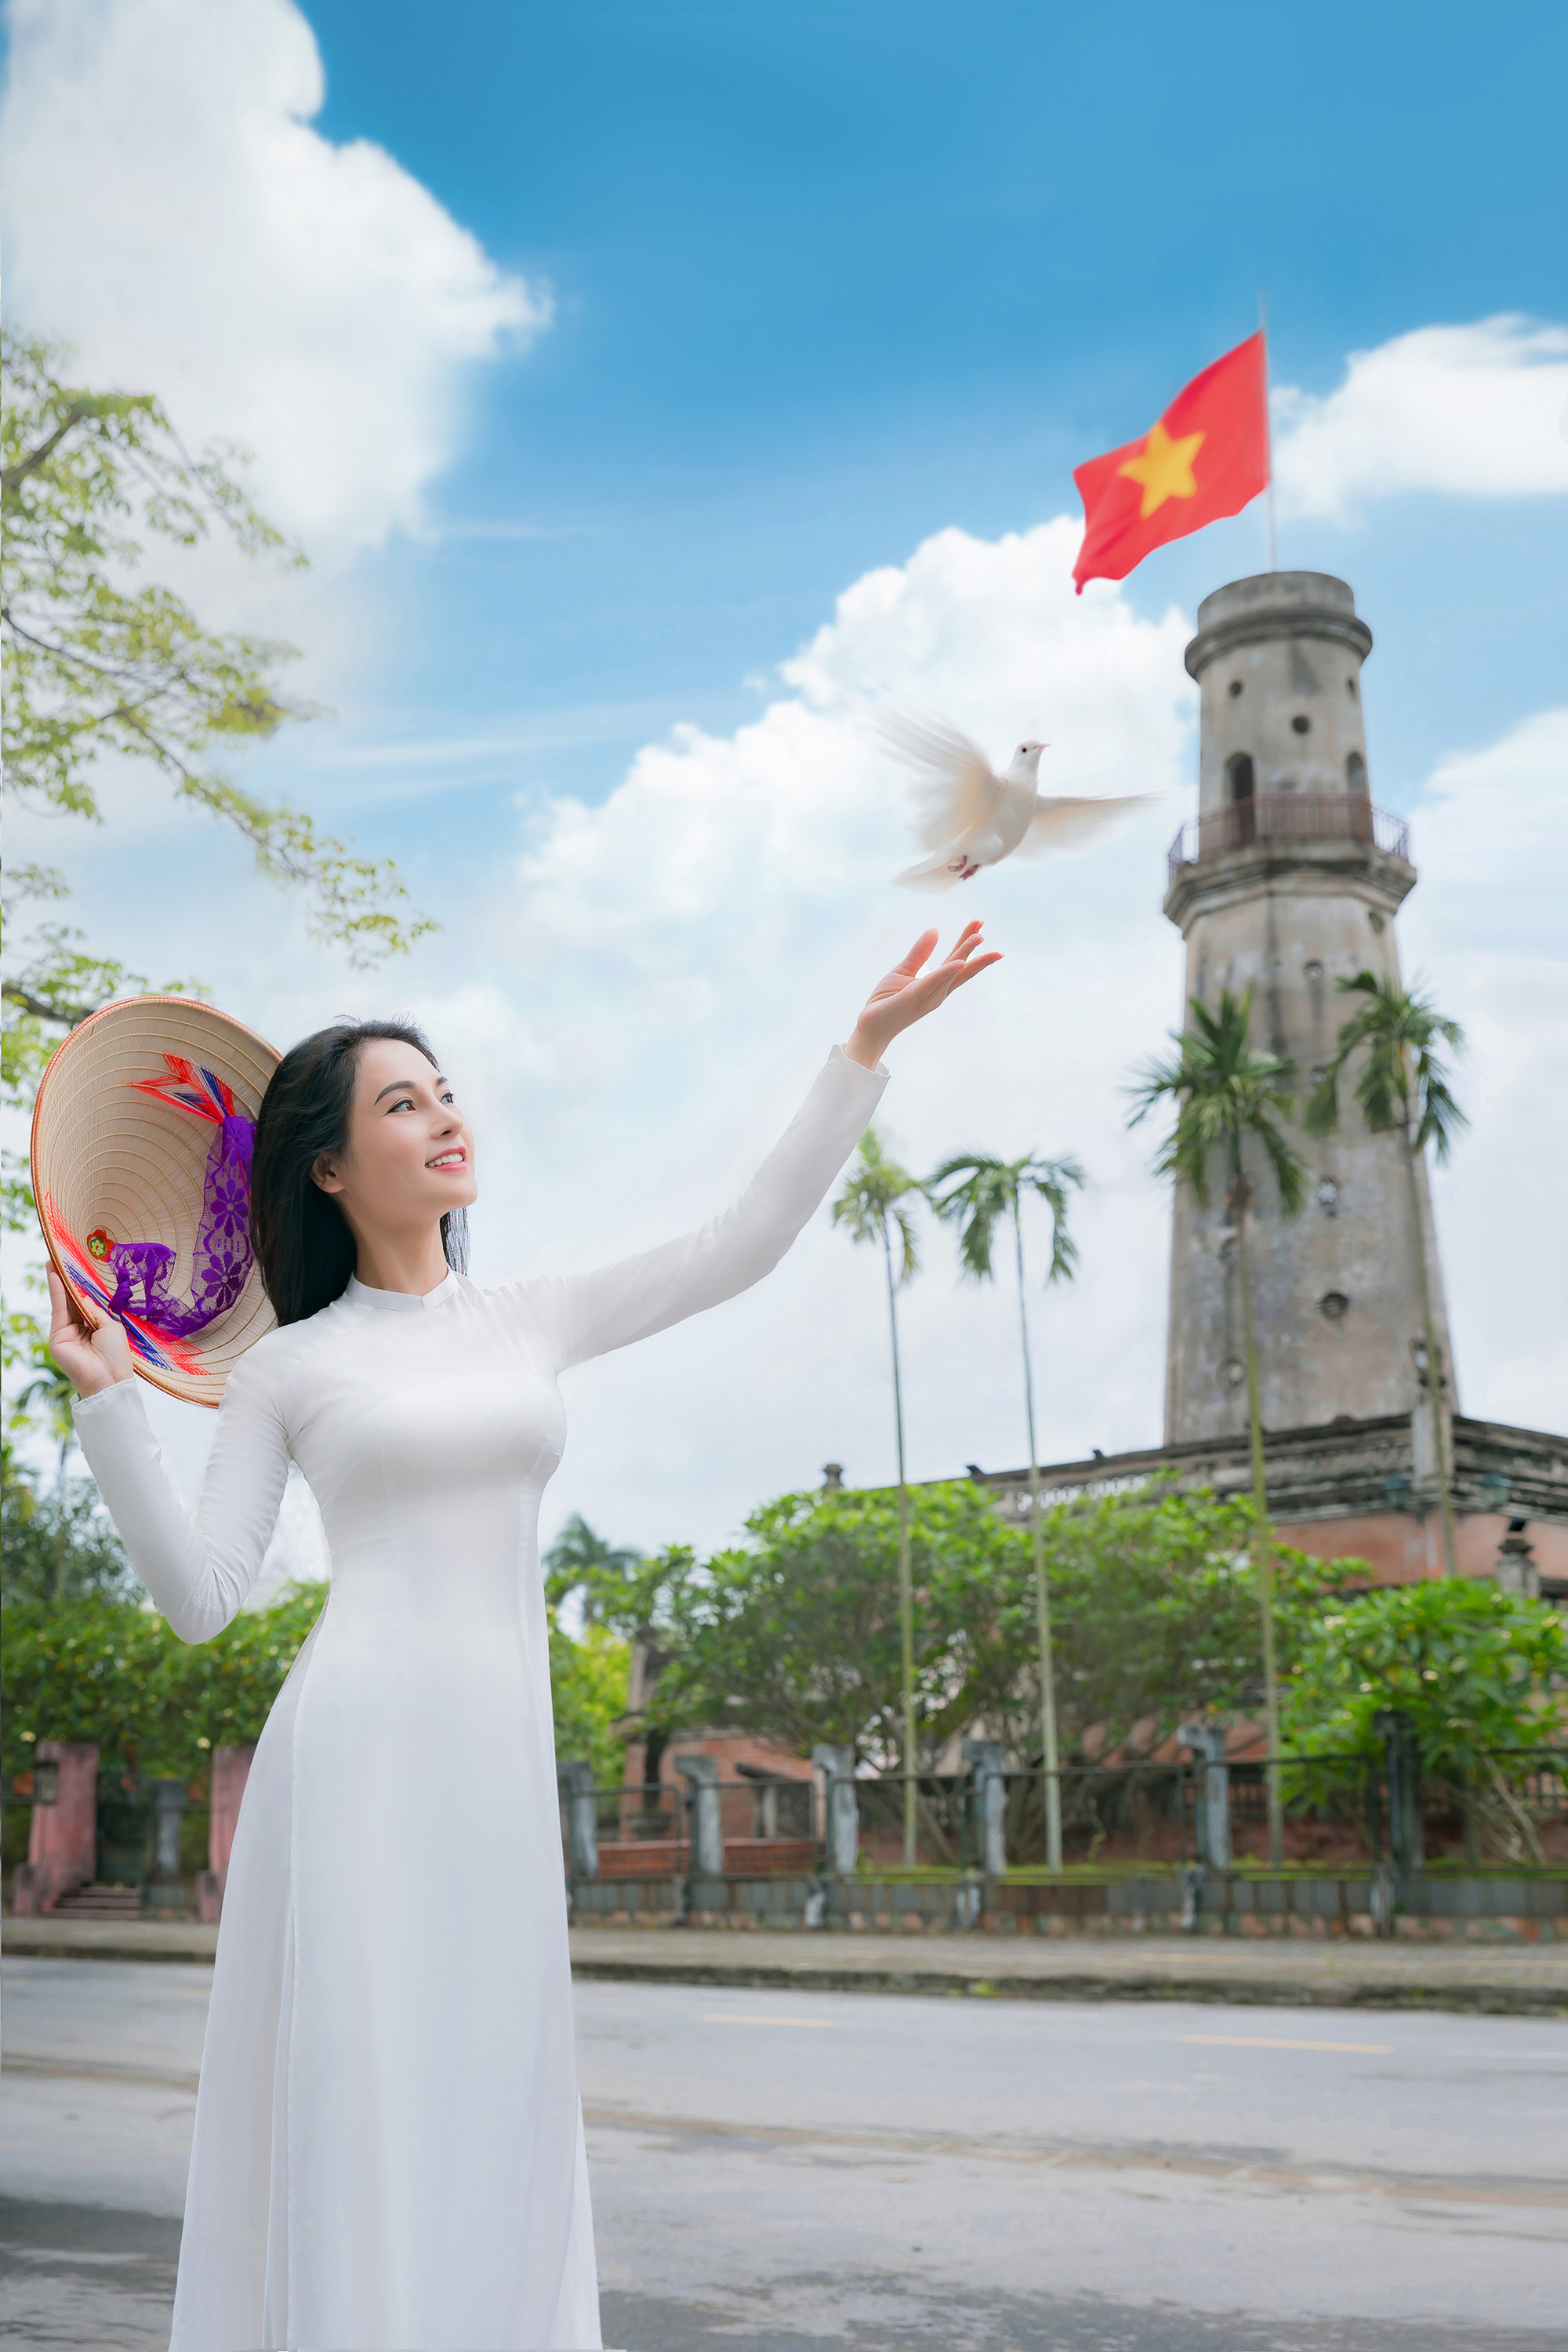 Áo dài Việt: Với tinh thần truyền thống và sự kiêu hãnh đặc trưng của người Việt, áo dài trở thành một biểu tượng về nét đẹp và sự quyến rũ của phụ nữ Việt Nam. Xem hình ảnh Áo dài Việt để được chiêm ngưỡng vẻ đẹp kiêu sa của trang phục dân tộc này.